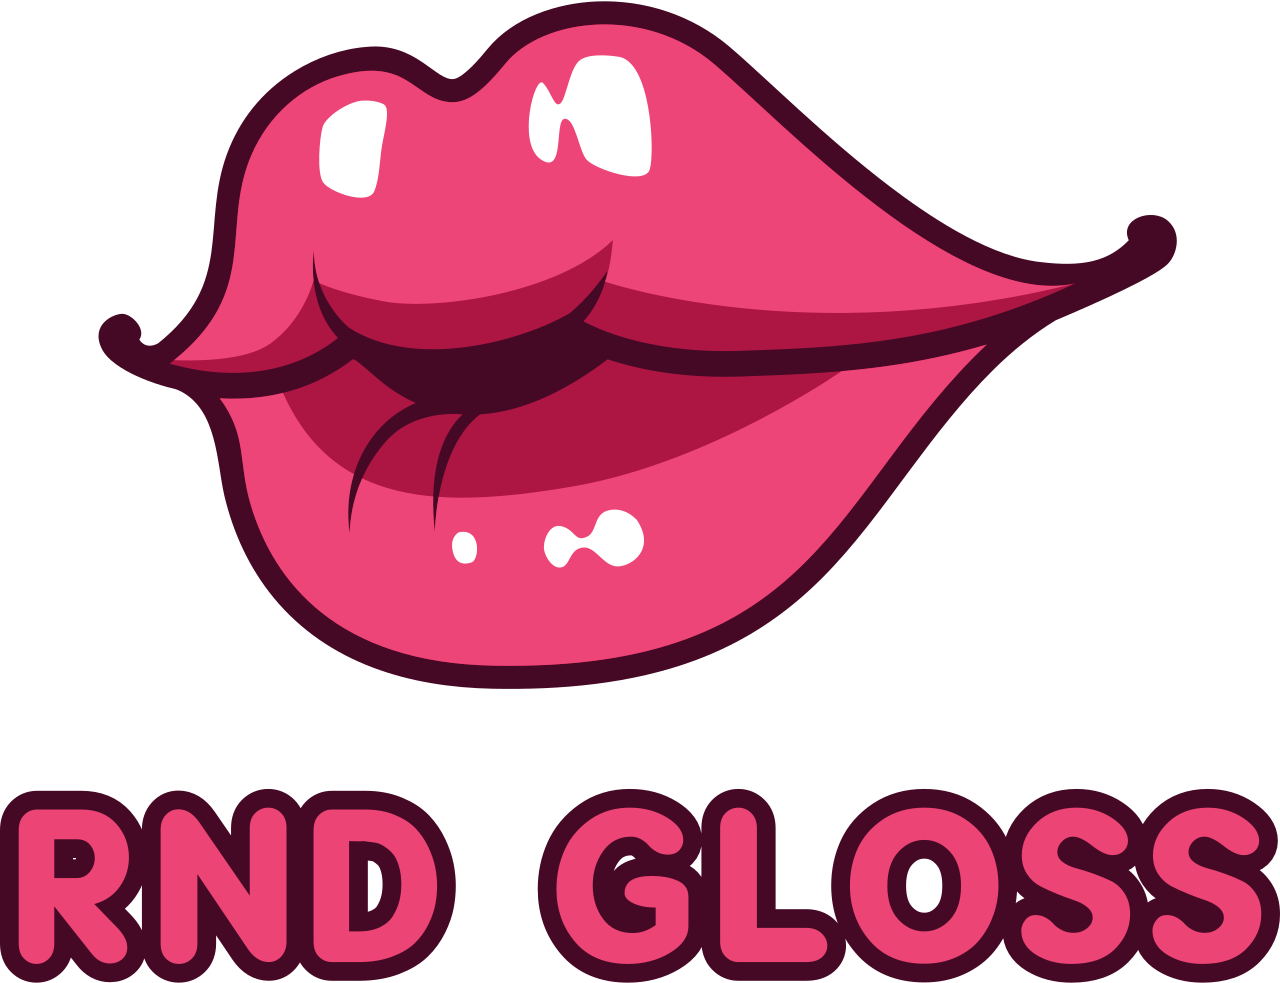 RnD Gloss's logo